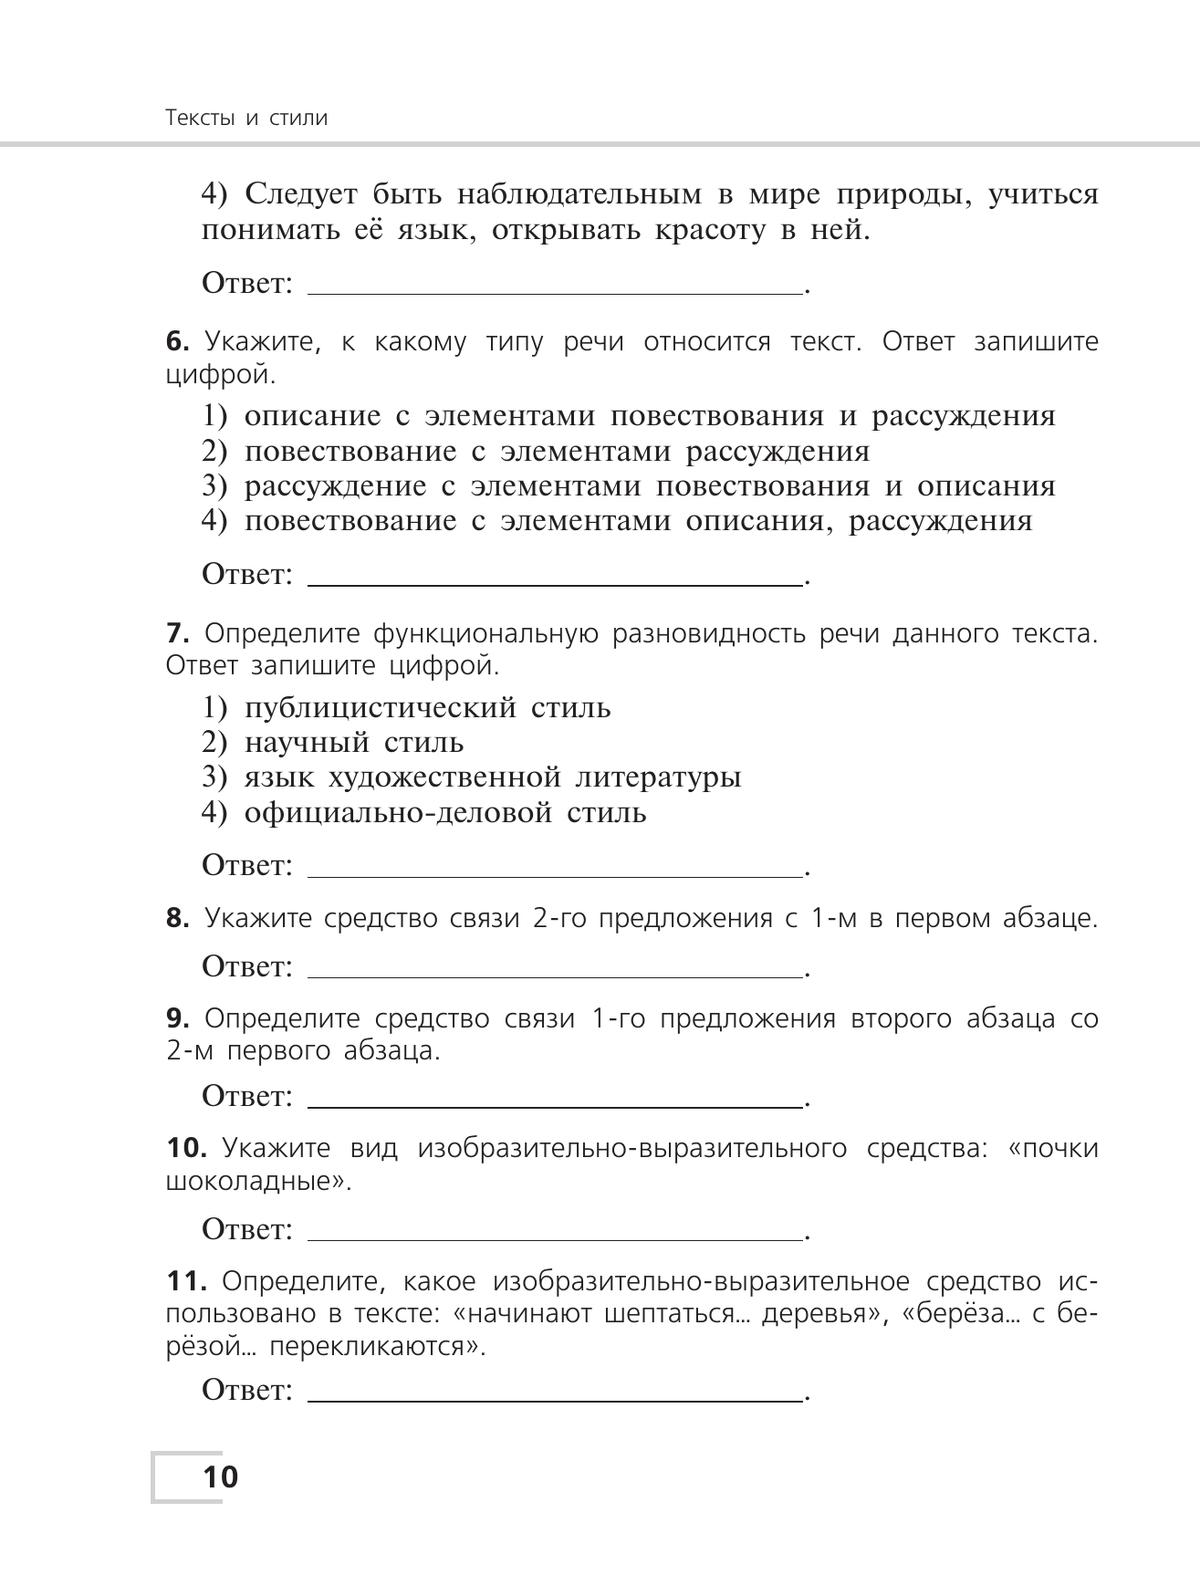 Русский язык. Тематический контроль. 7 класс 10